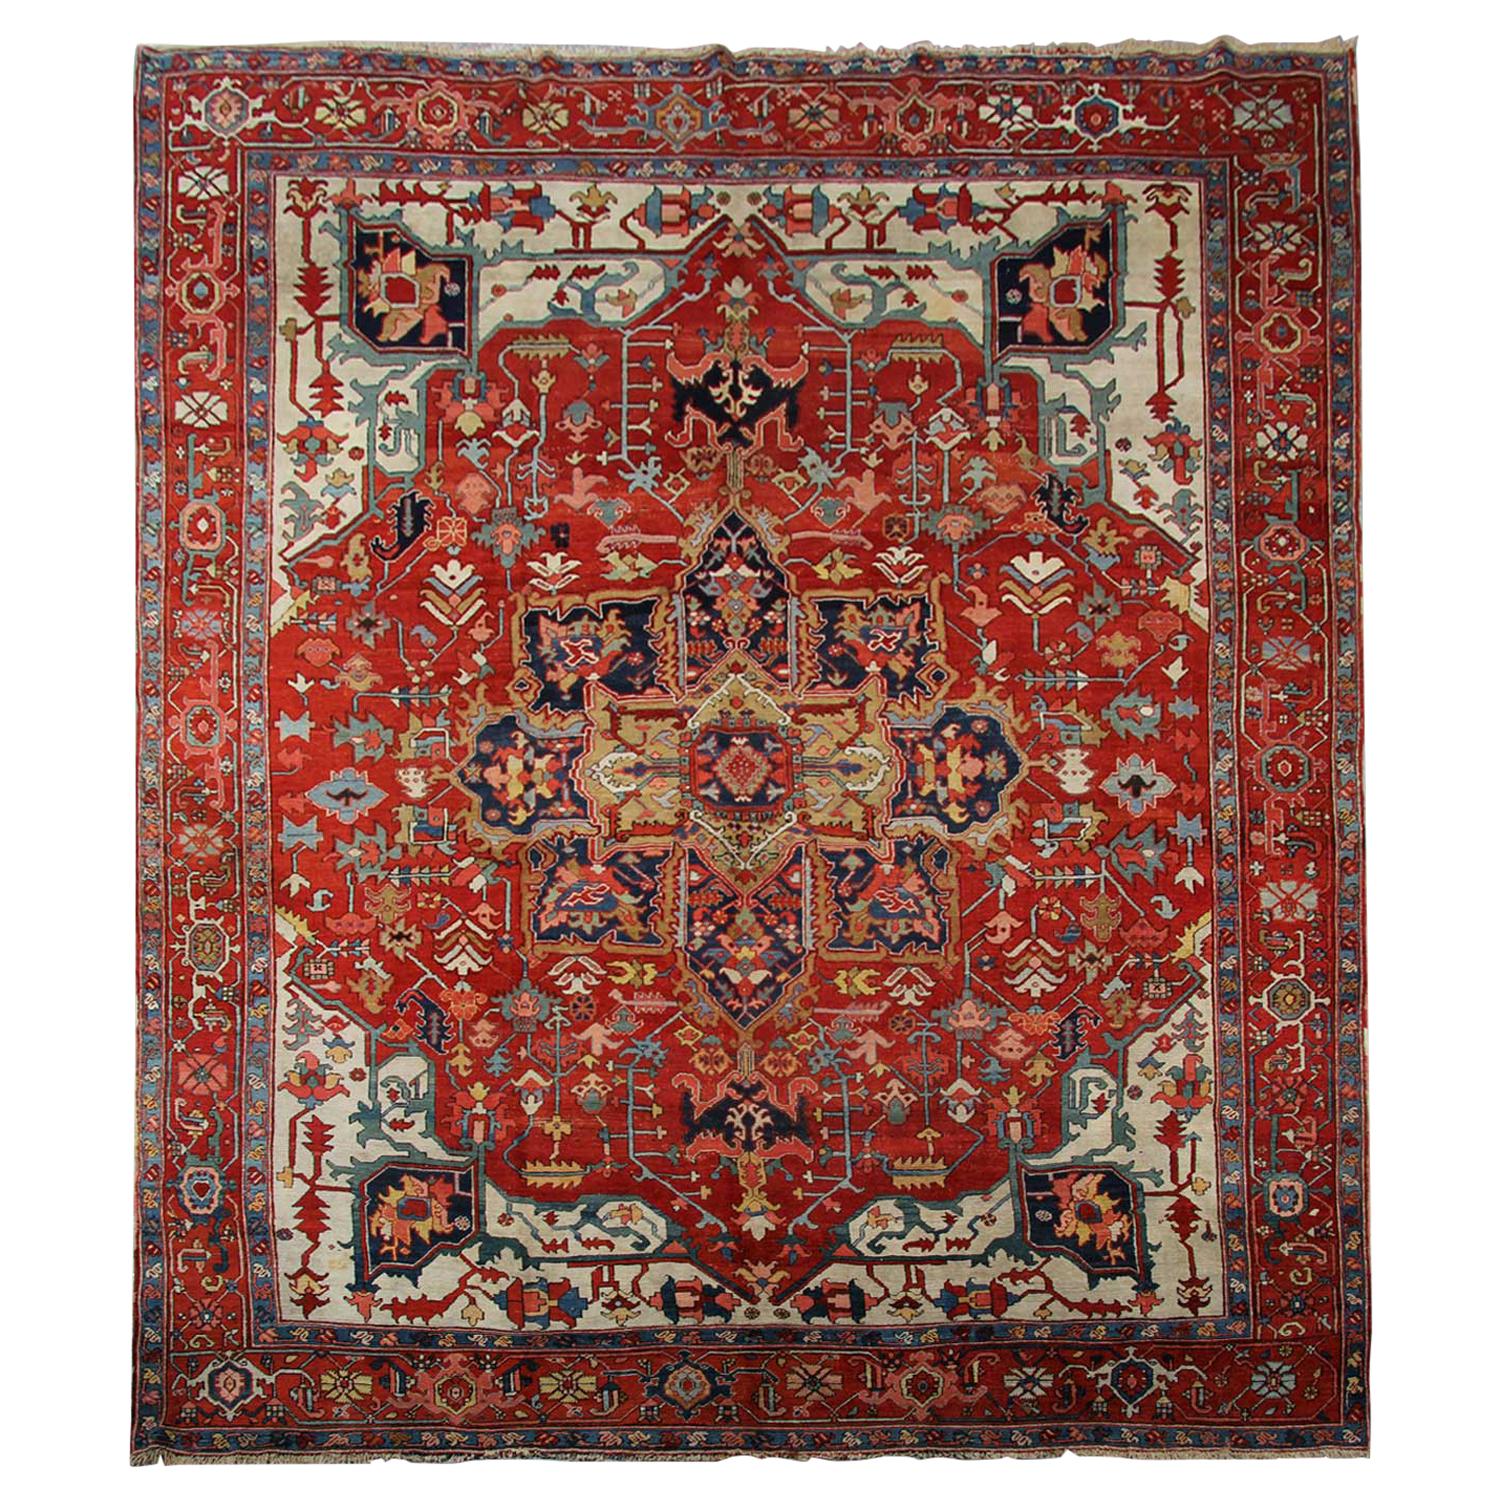 Seltener Antiker Teppich Traditioneller Handgefertigter Teppich Großer Wollteppich Rost